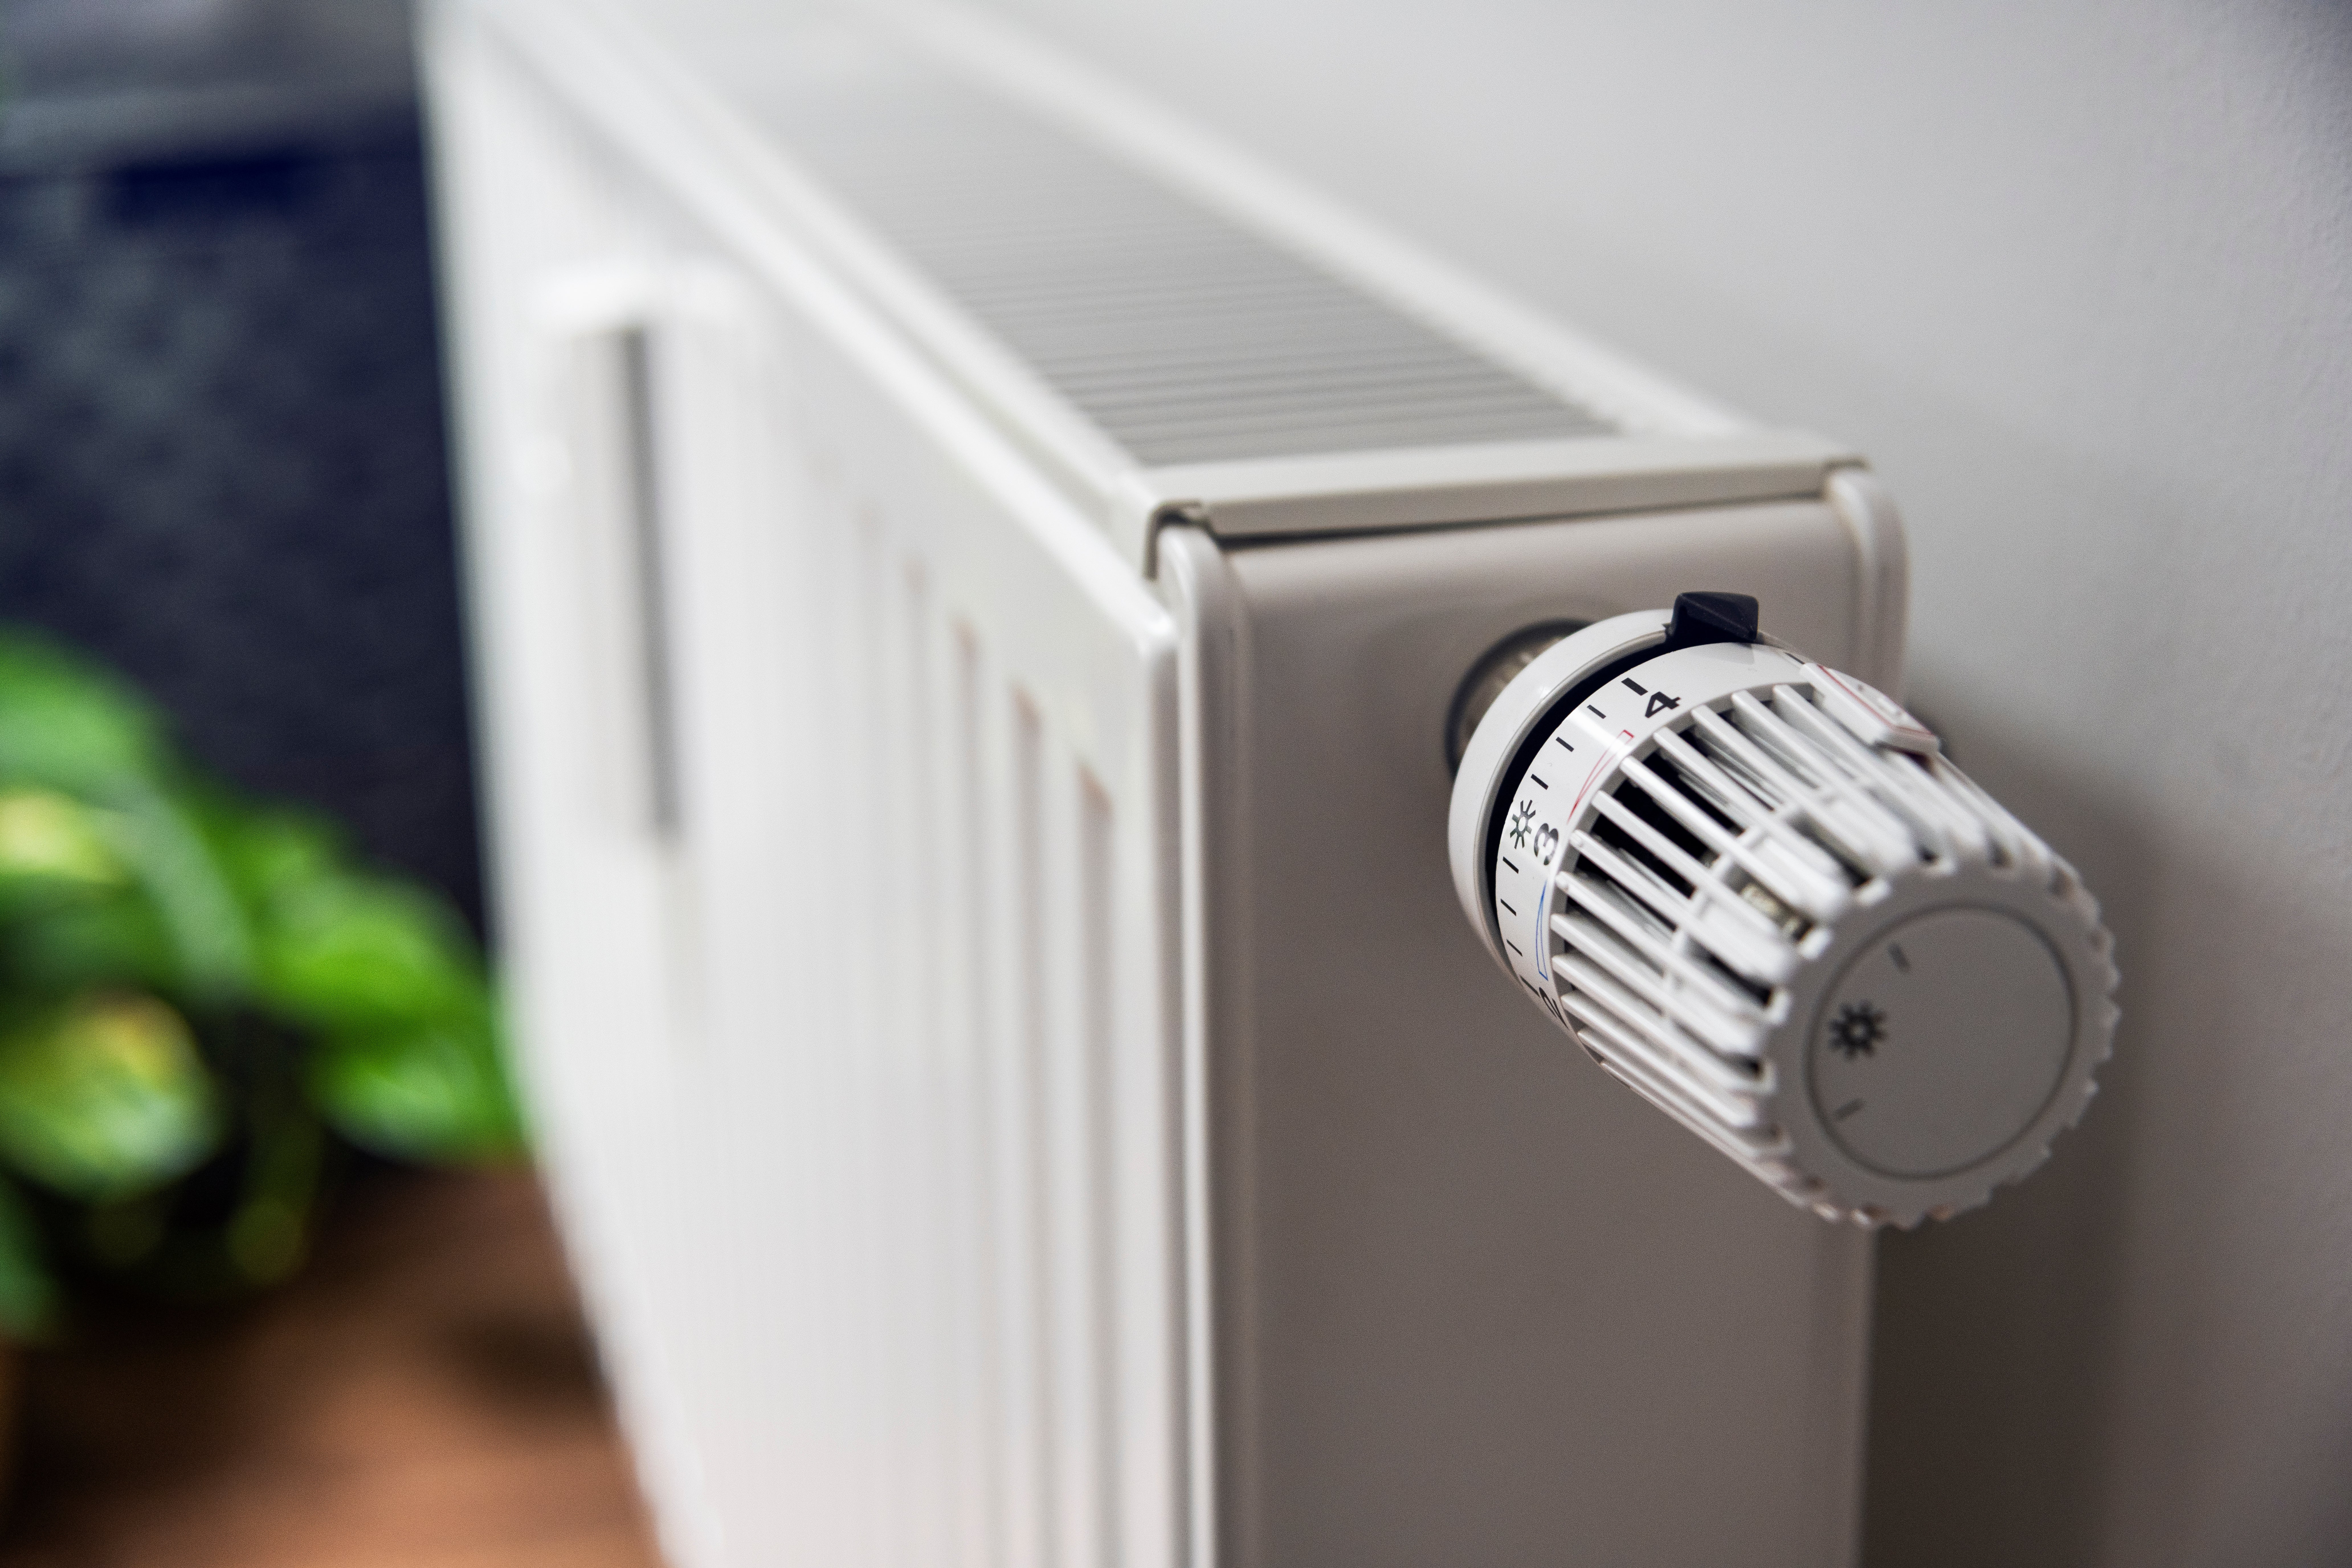 Valvole termostatiche su vecchi termosifoni: come comportarsi